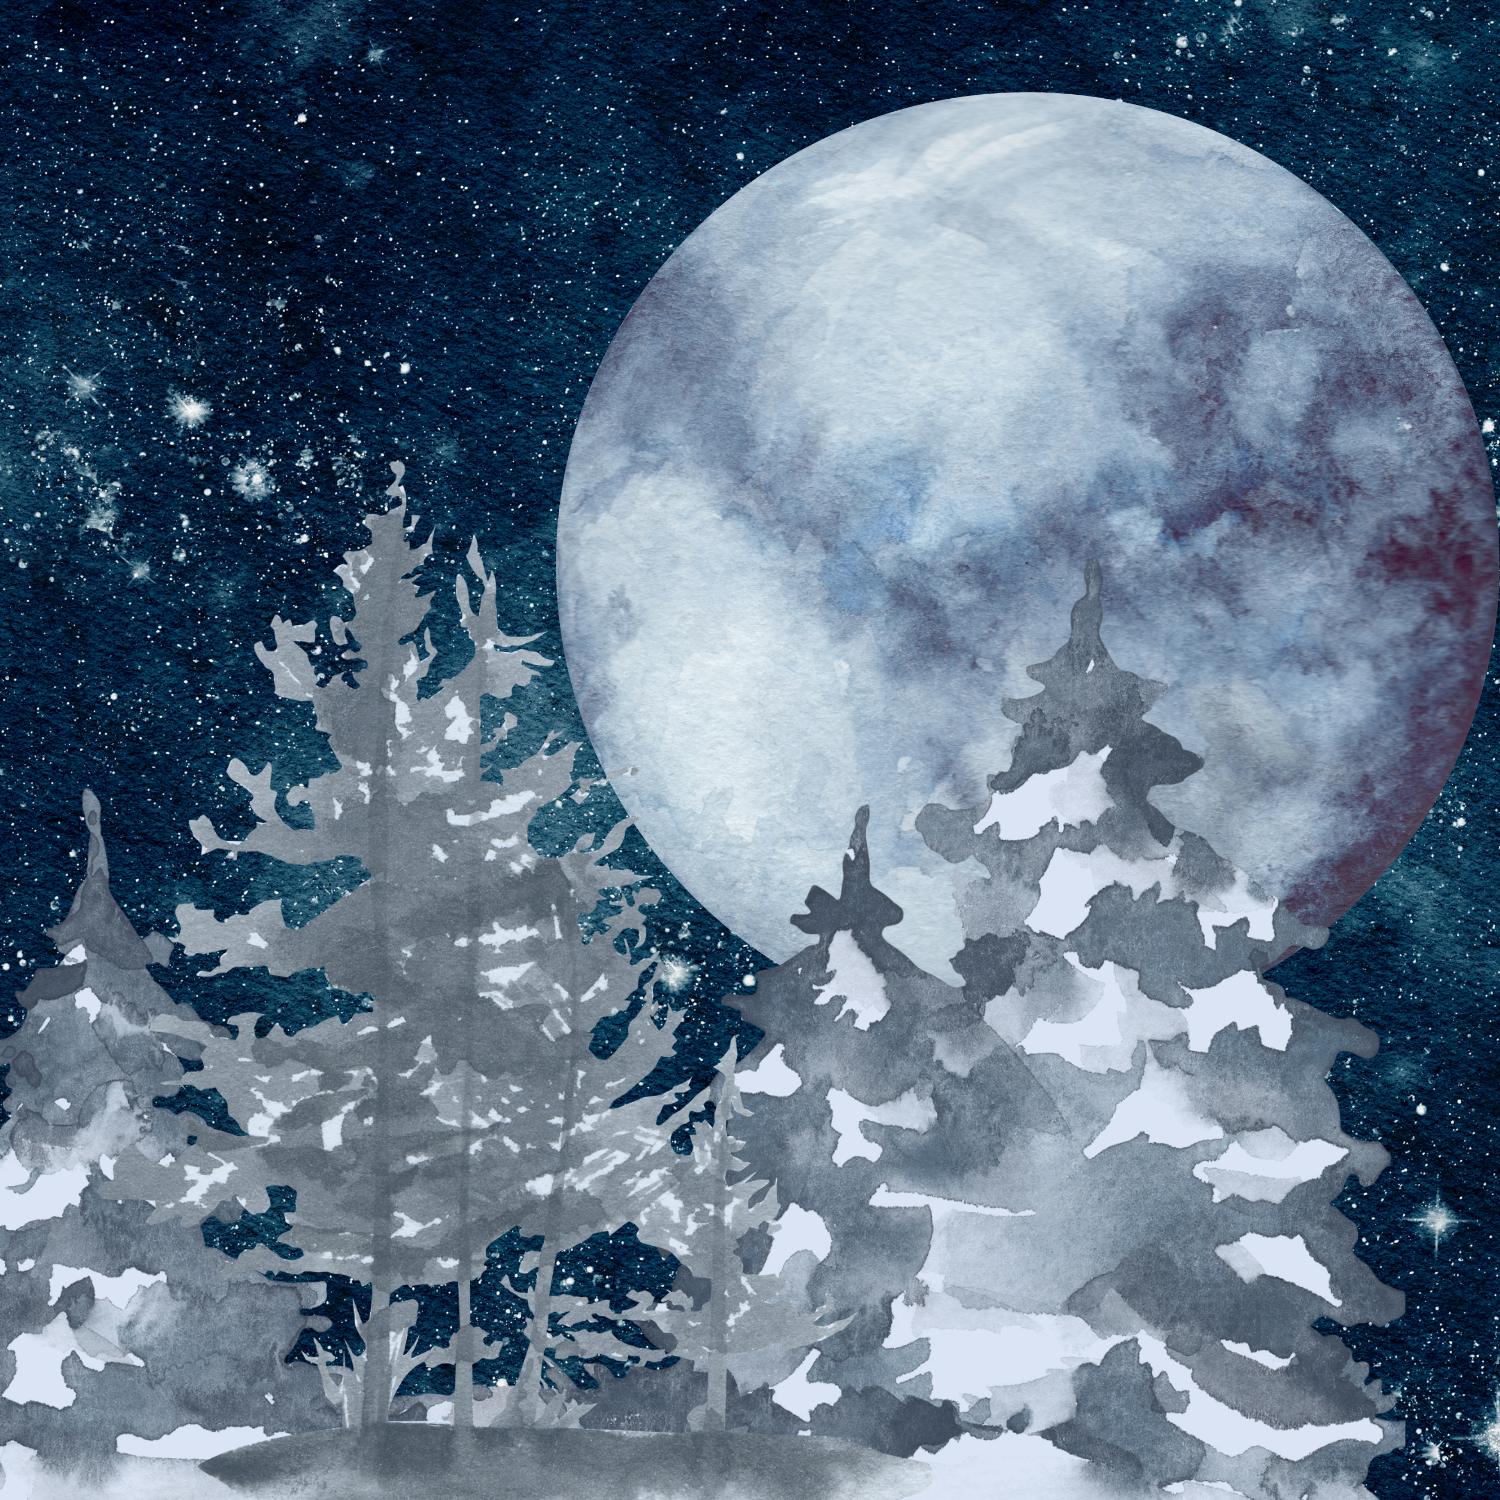 Nydra: Deity of the Winter Moon